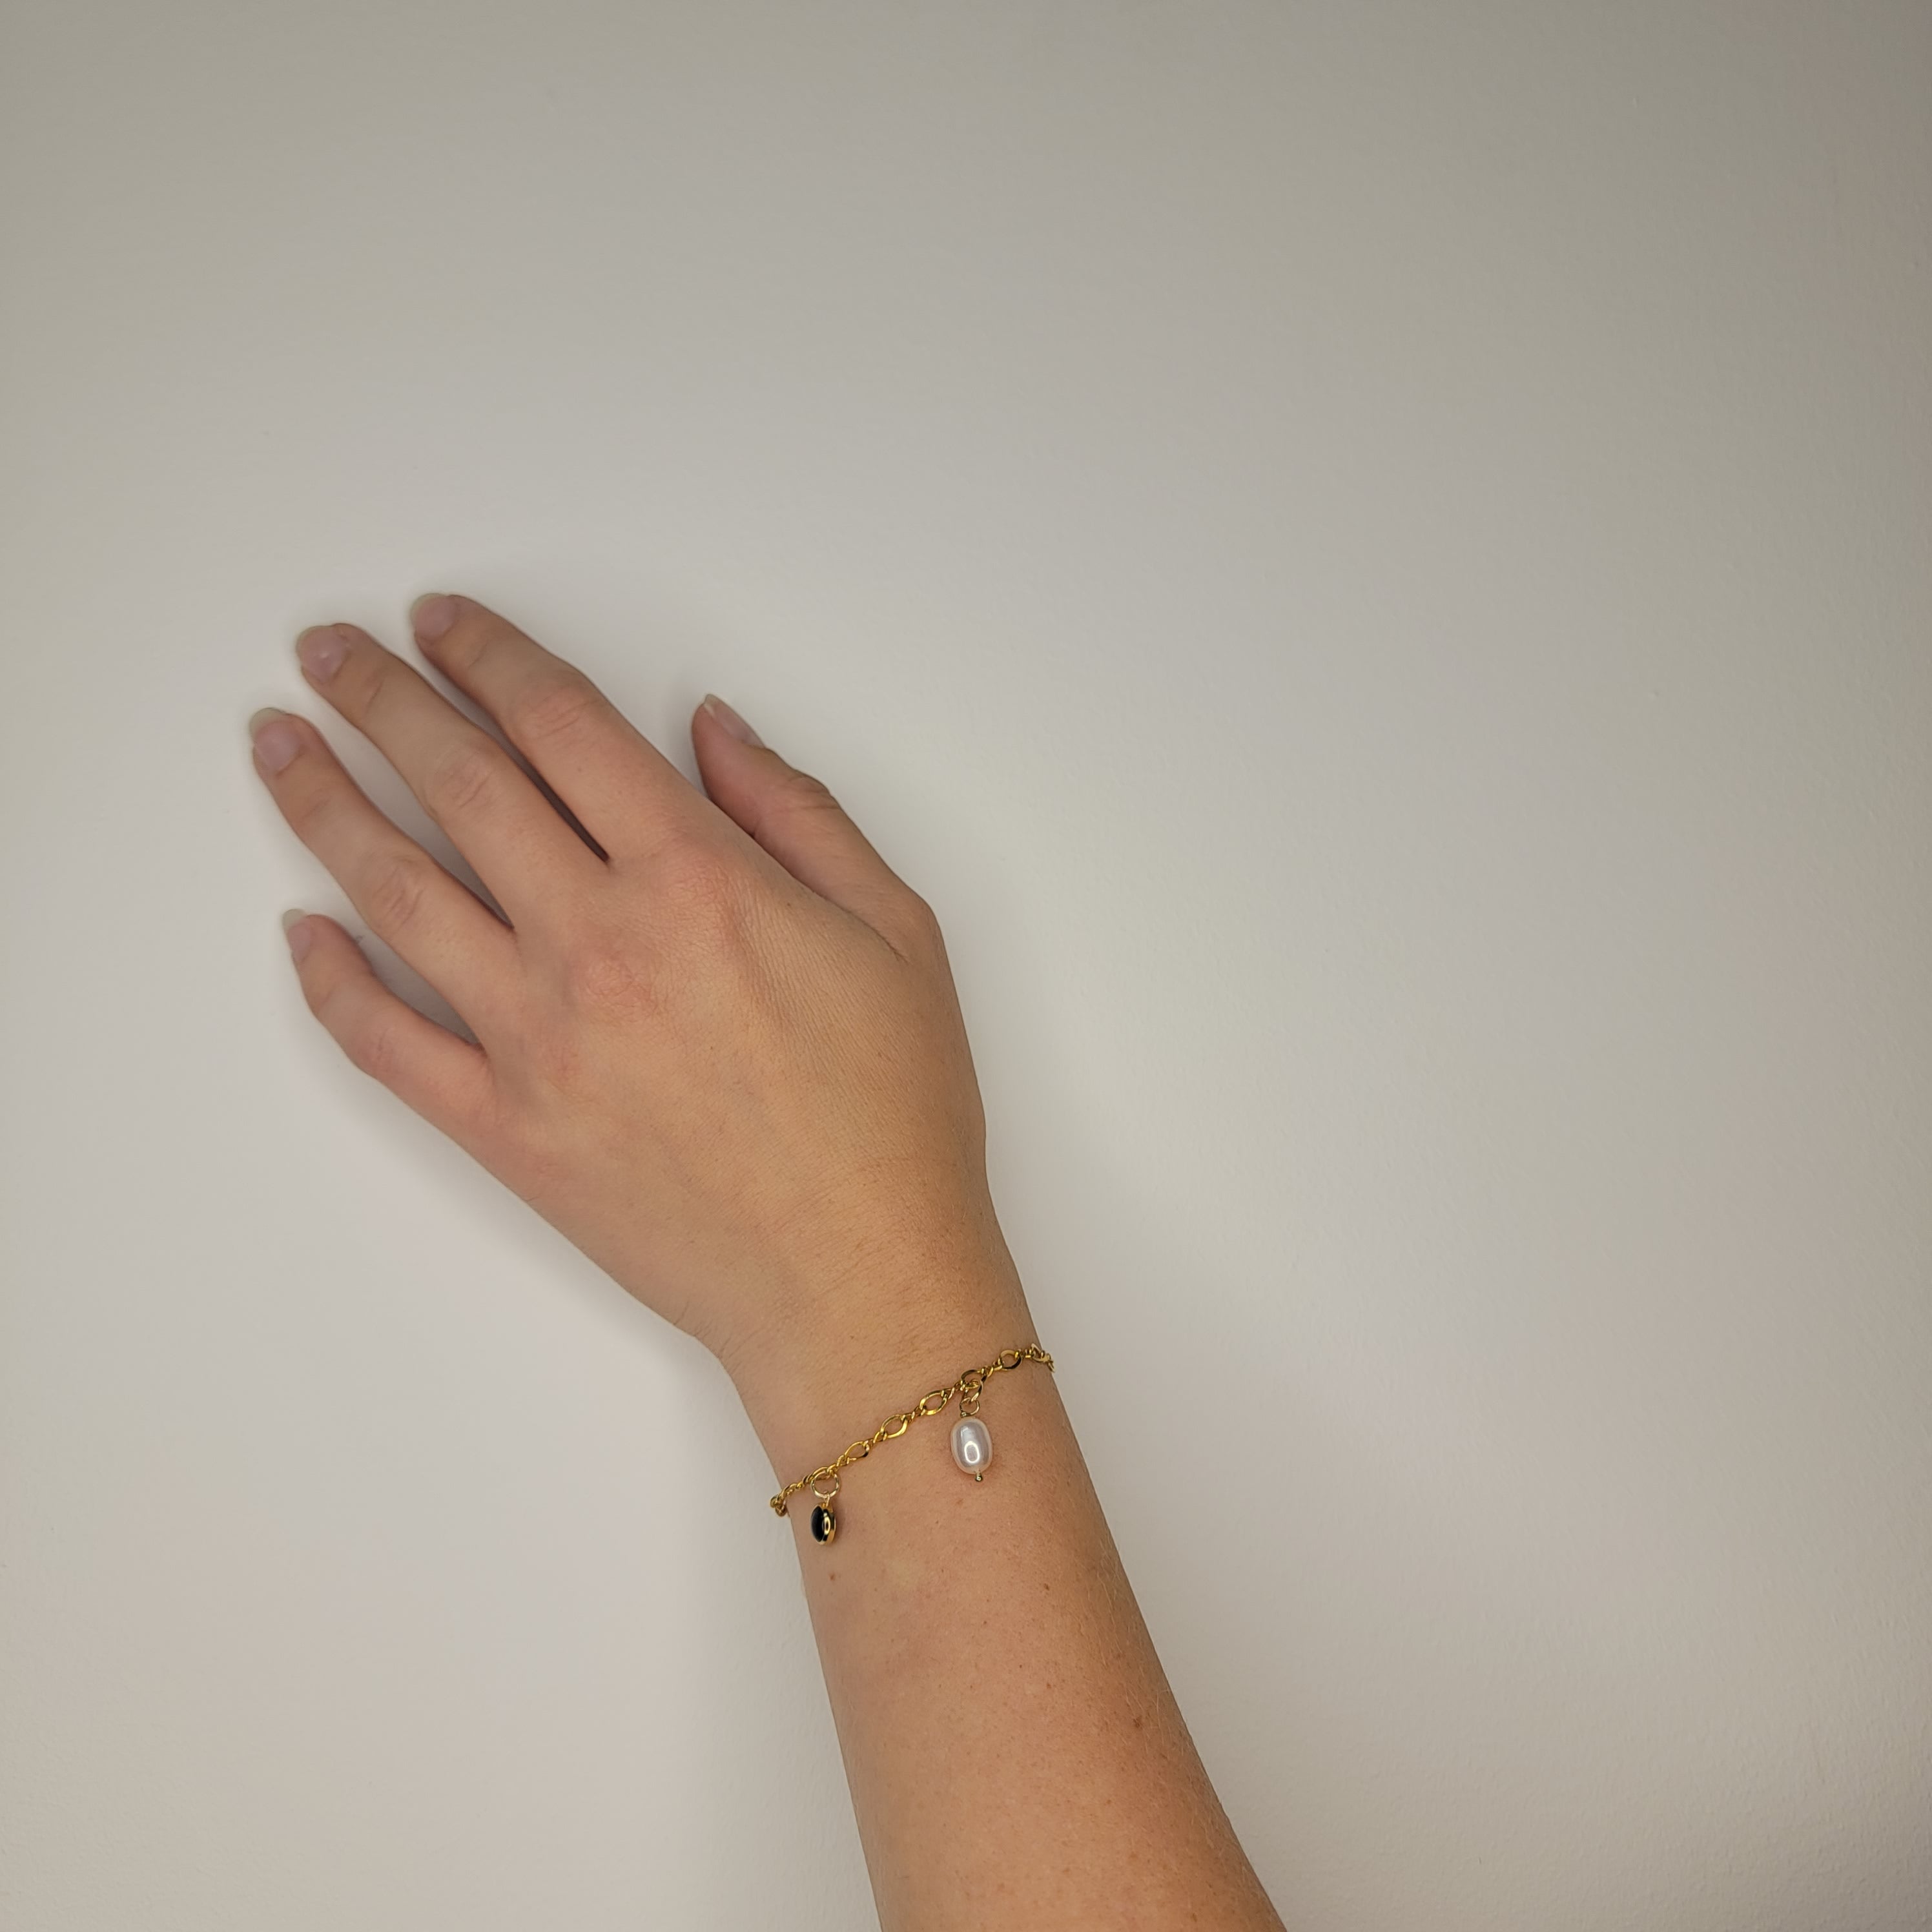 Large Gold Plain Chain Bracelet